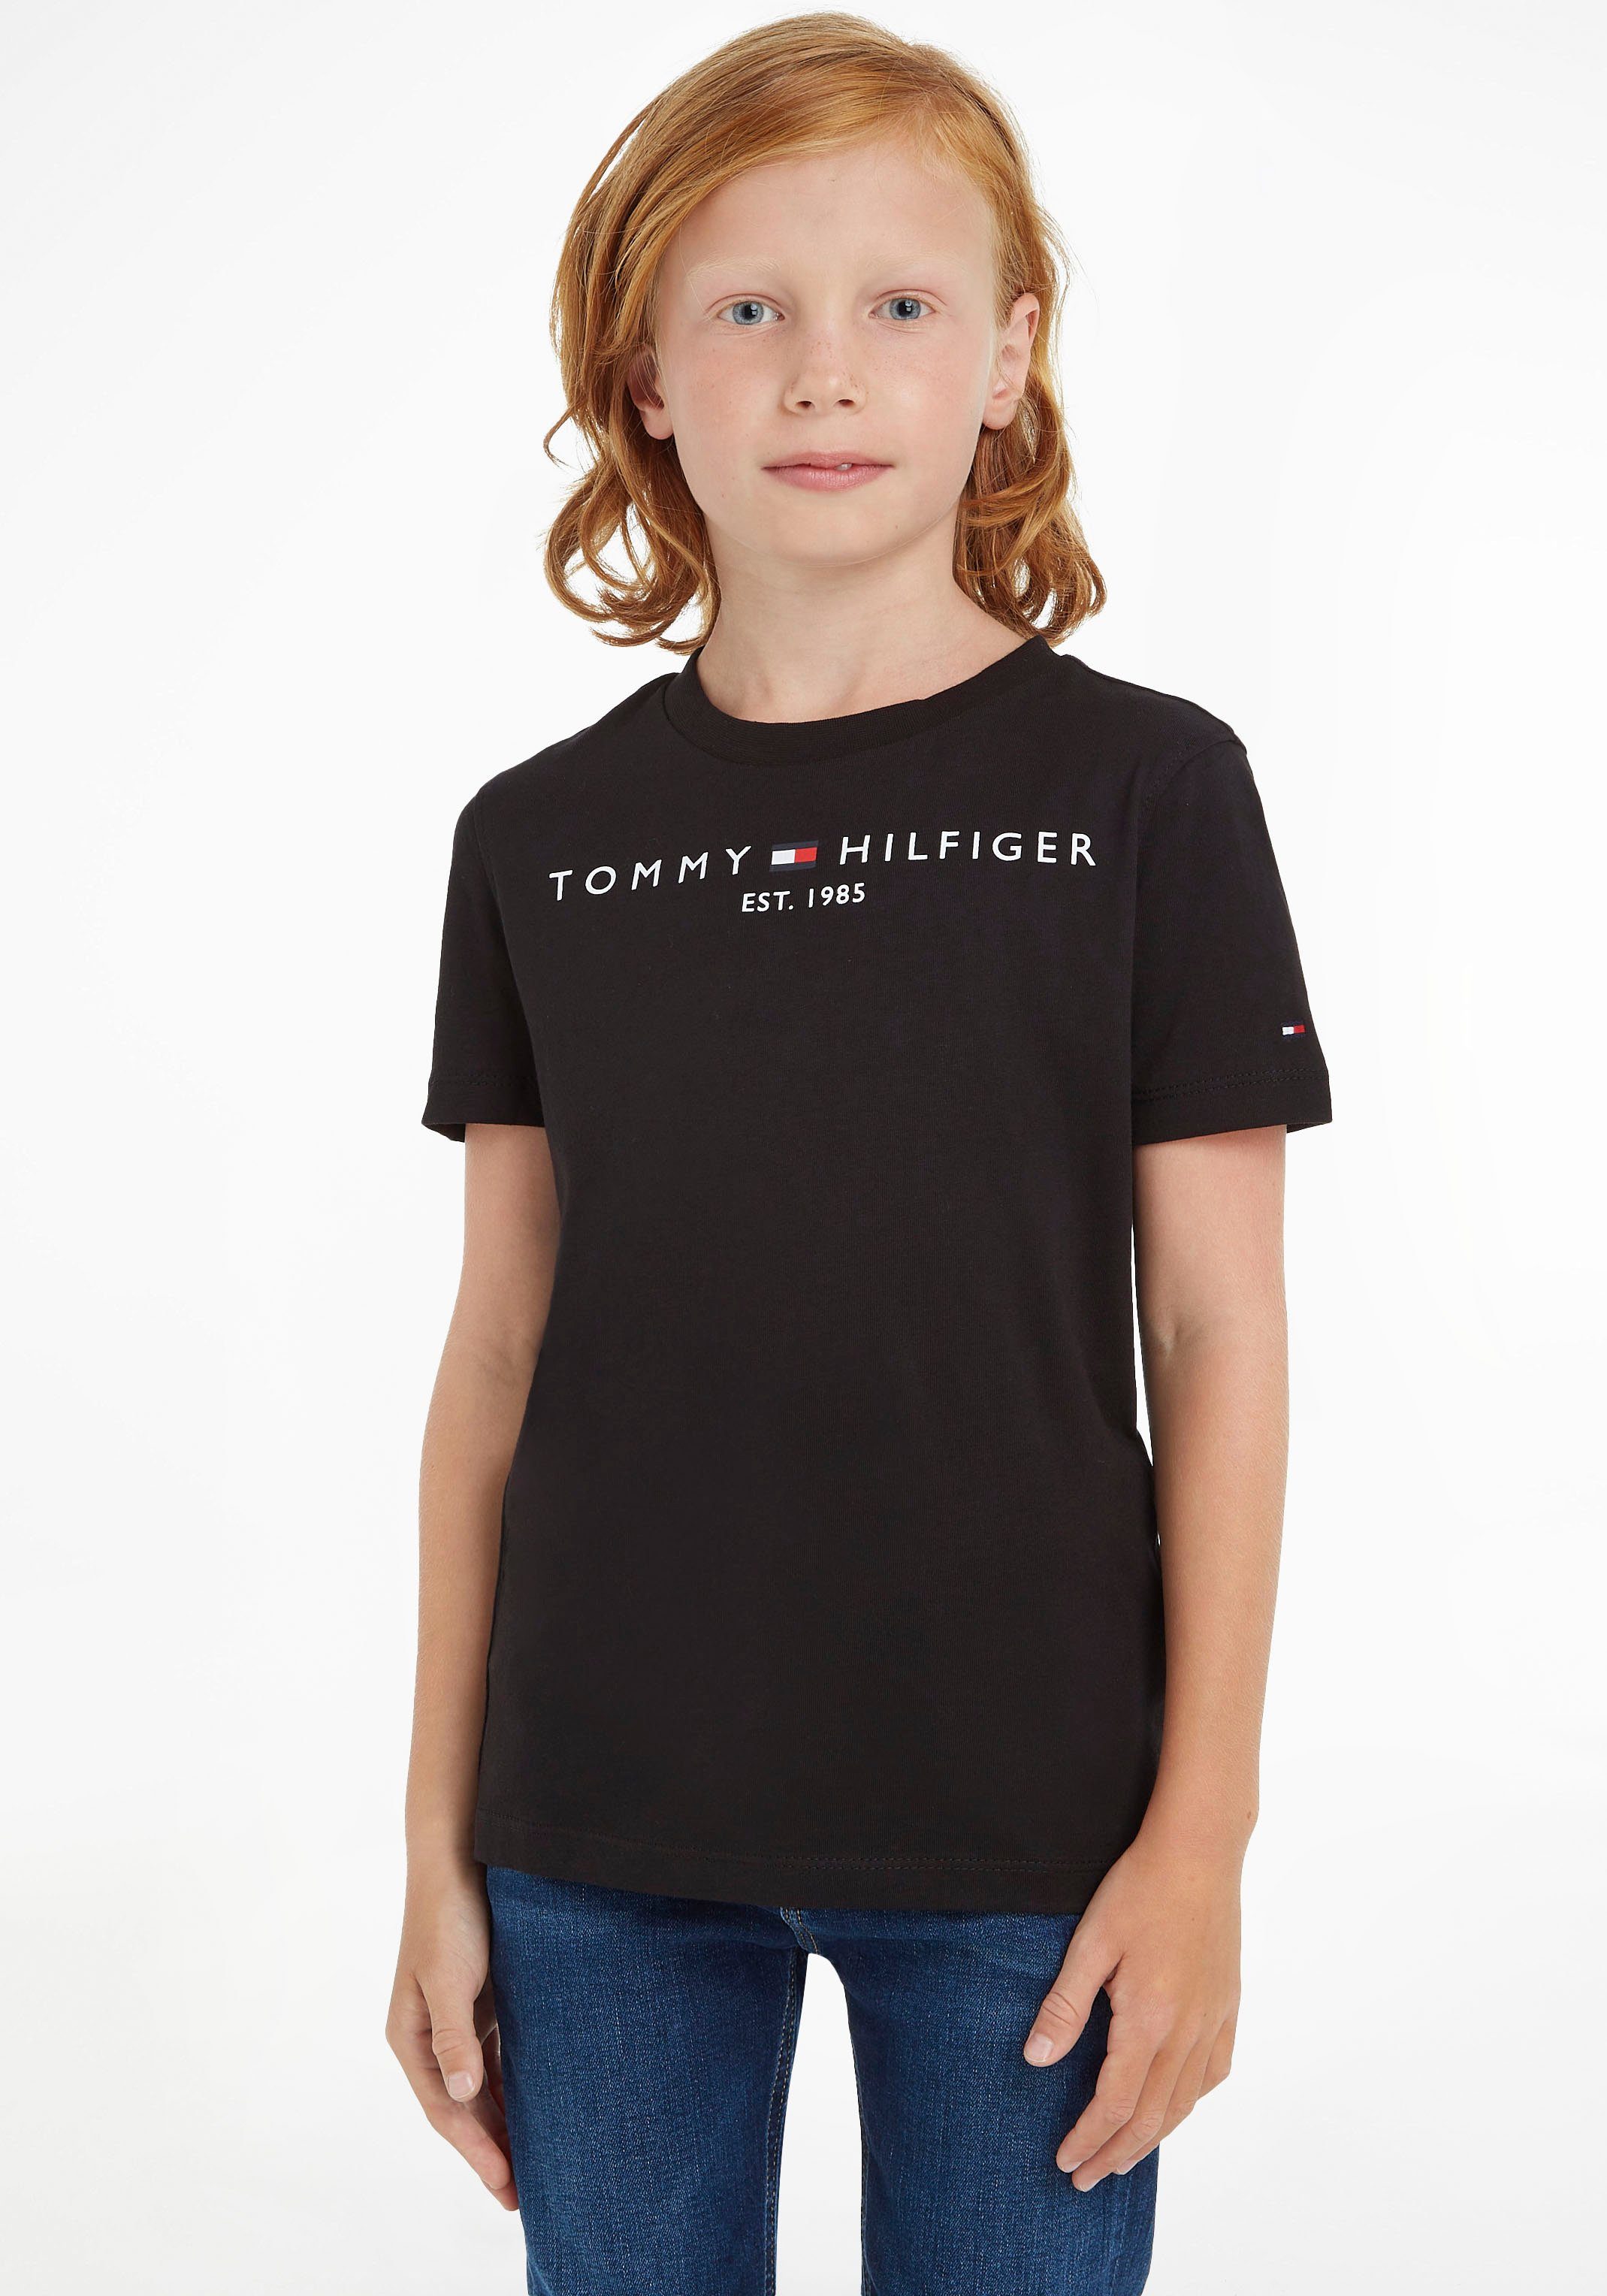 Tommy Hilfiger T-Shirt ESSENTIAL TEE Kinder Kids Junior MiniMe,für Jungen